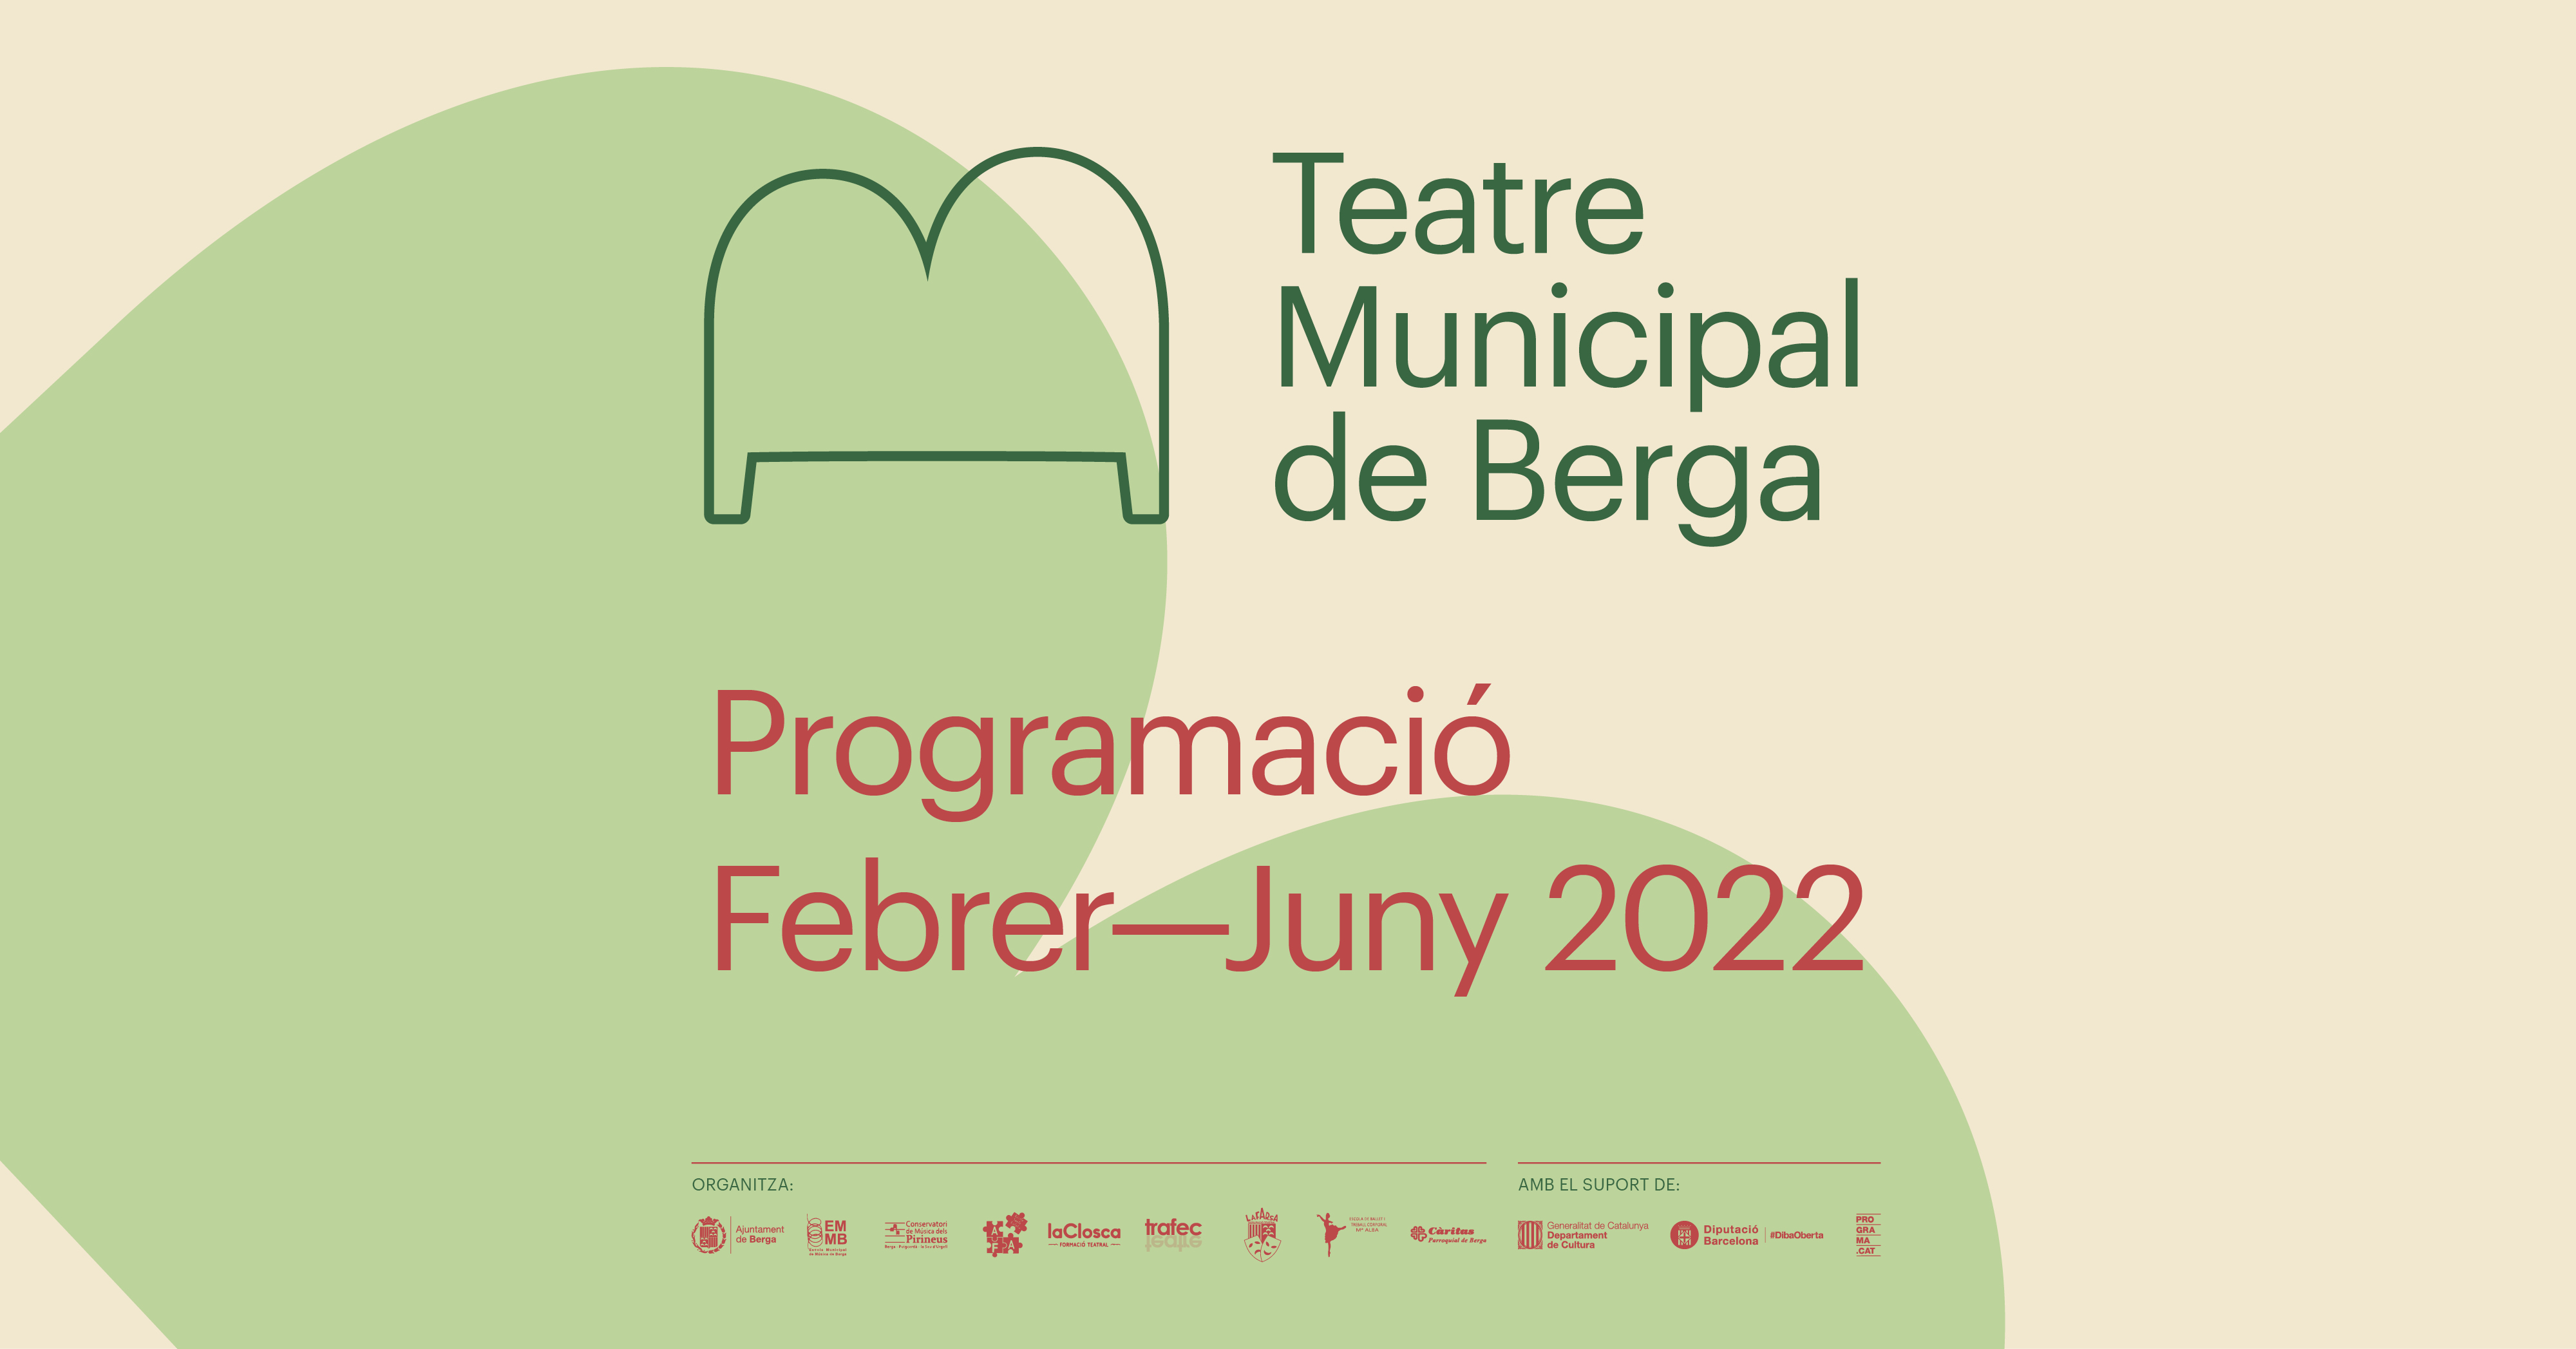 Teatre municipal de Berga - Programació febrer-juny 2022